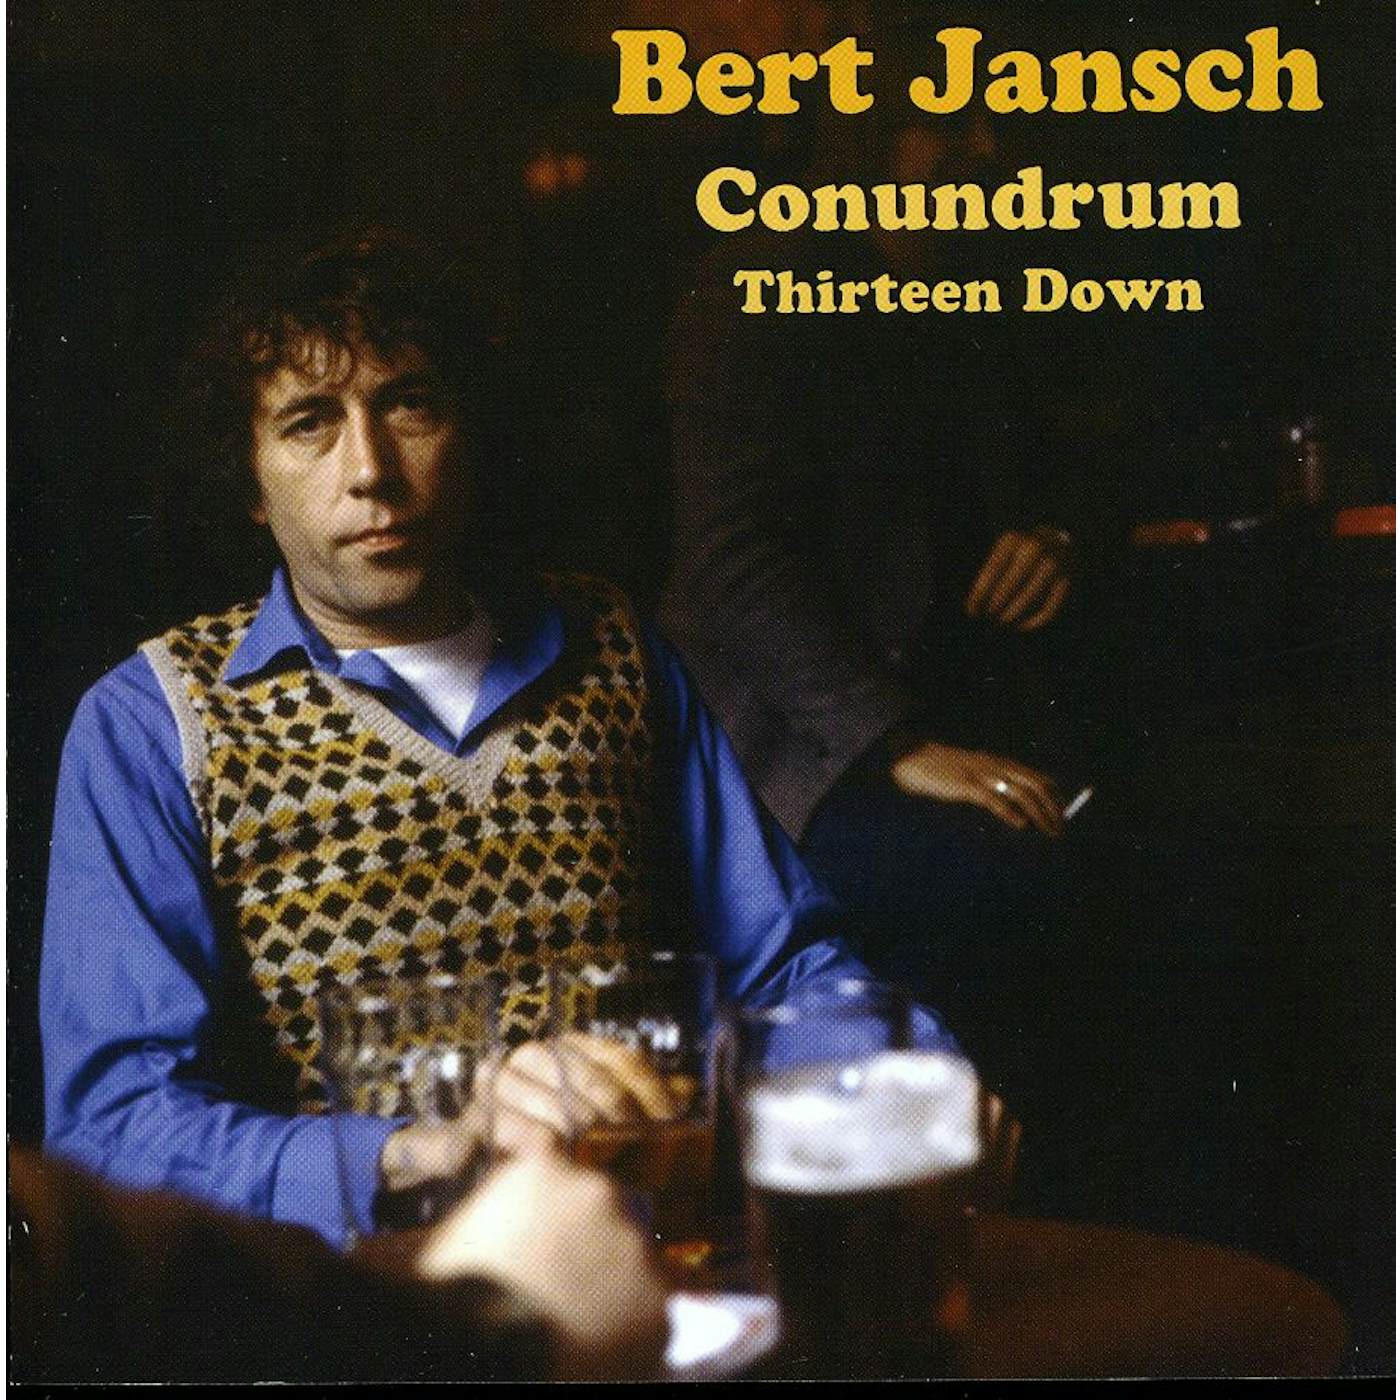 BERT JANSCH CONUNDRUM THIRTEEN DOWN CD